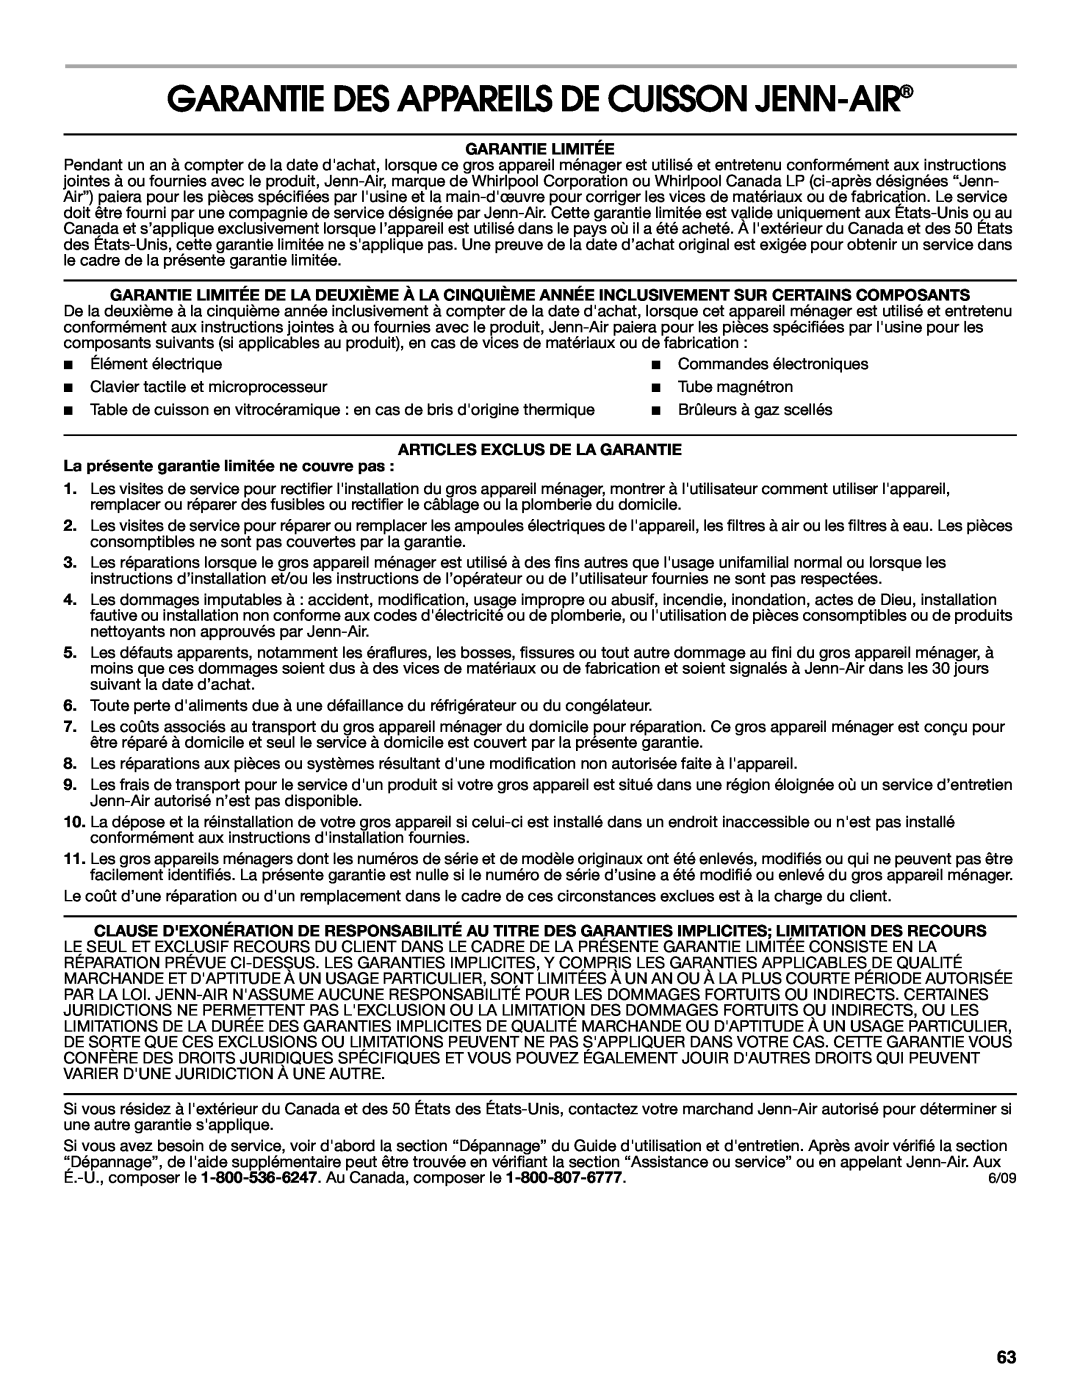 Jenn-Air JD59860 manual Garantie Des Appareils De Cuisson Jenn-Air, Garantie Limitée, Articles Exclus De La Garantie 